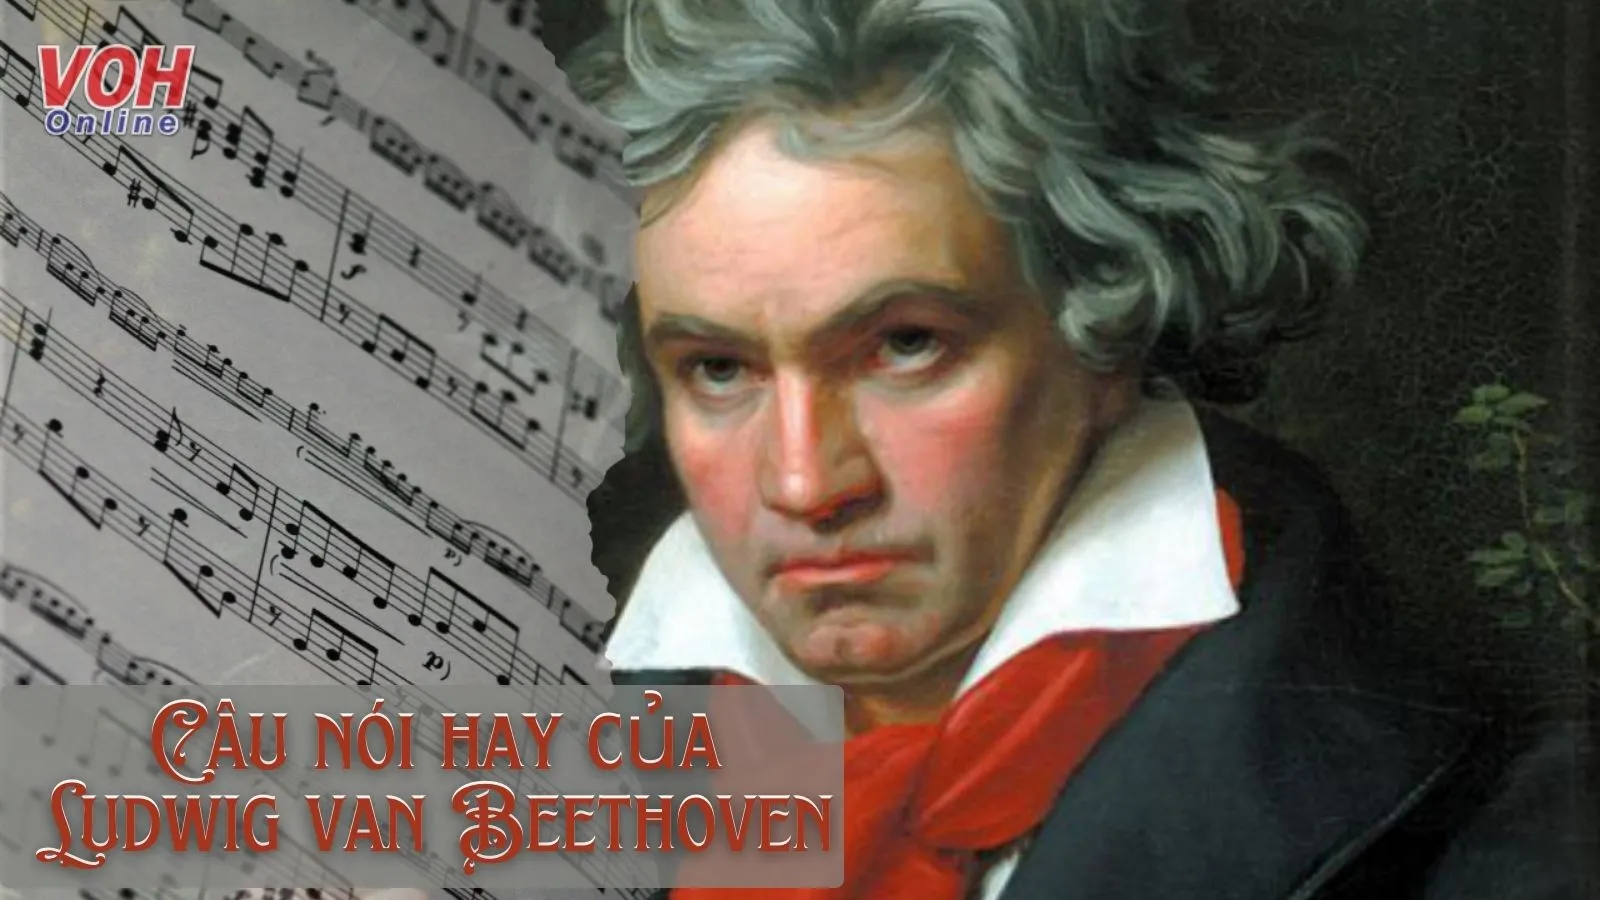 Beethoven là ai? 30+ câu nói hay của nhà soạn nhạc Ludwig van Beethoven về âm nhạc và đời sống